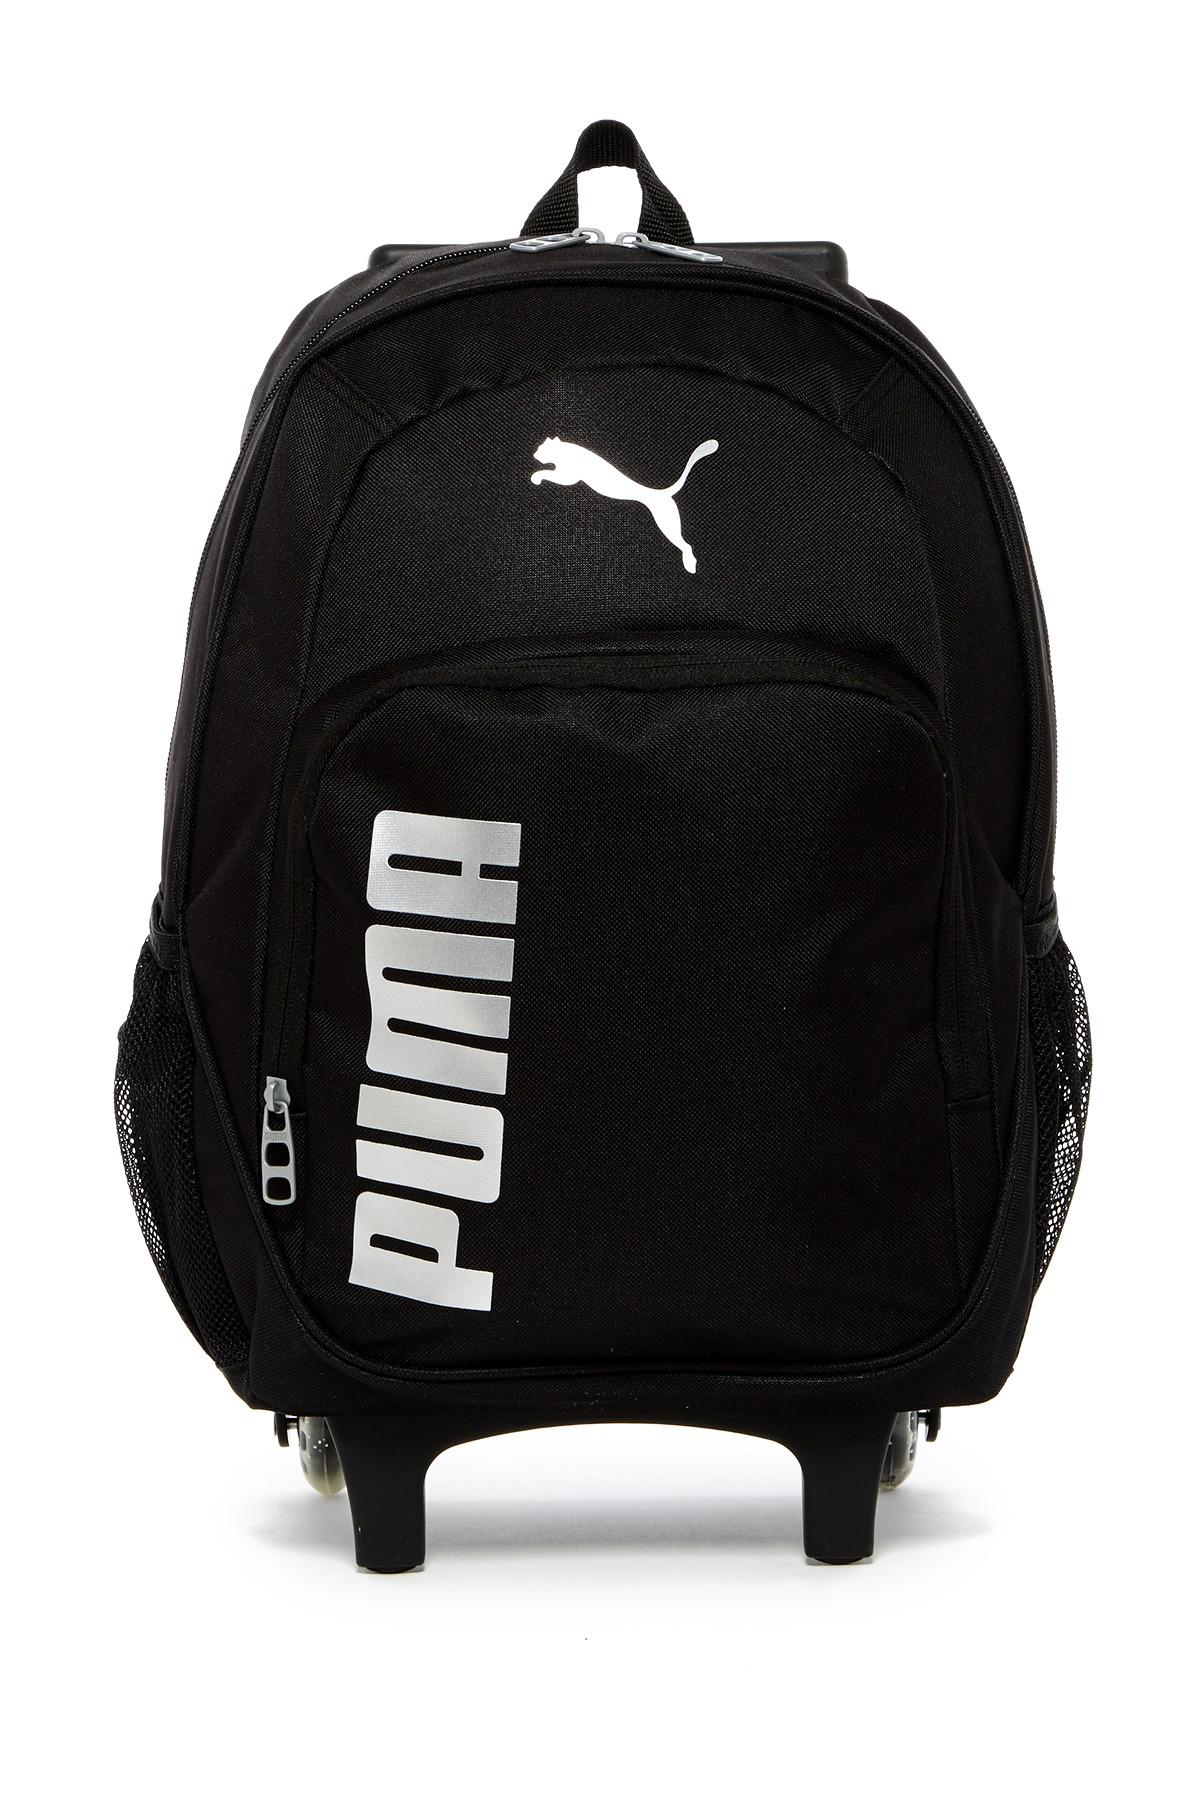 PUMA Rolling Wheeled Backpack in Black 